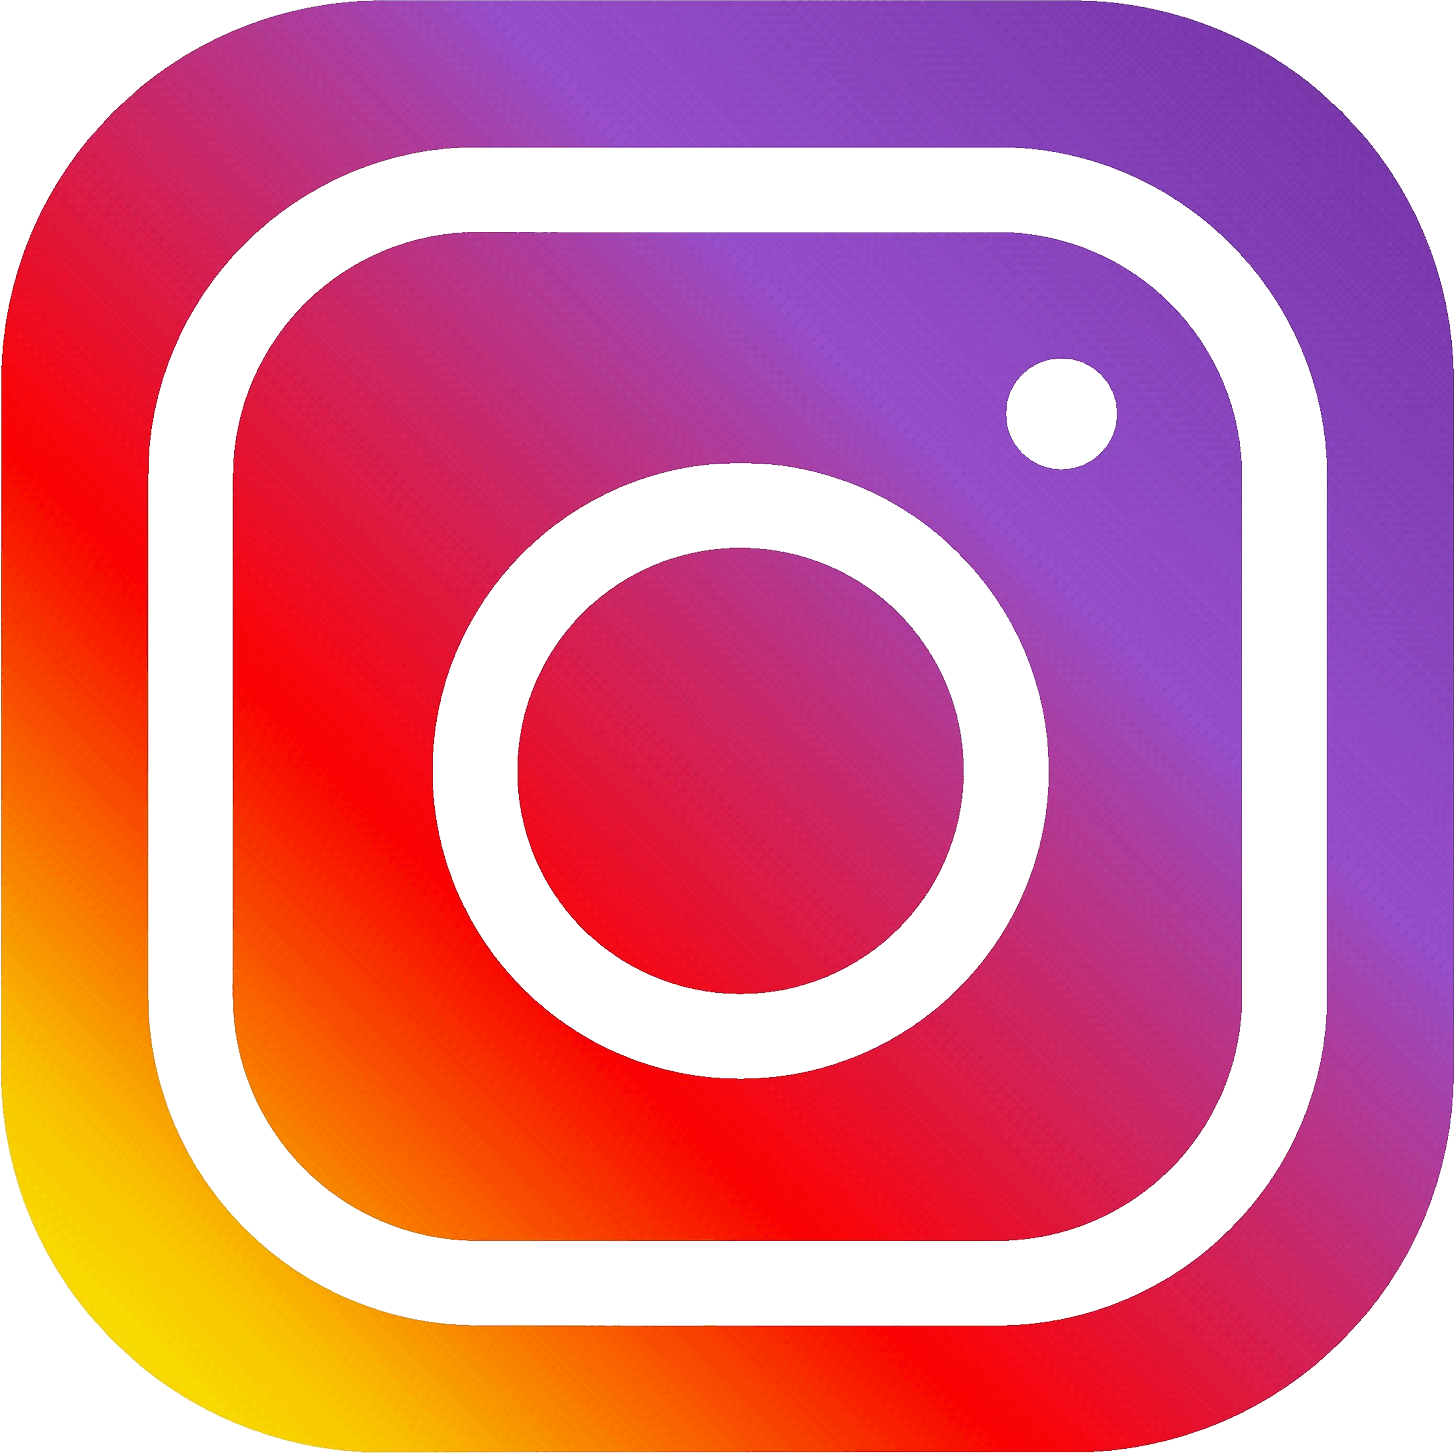 Suivez Synergie sur Instagram